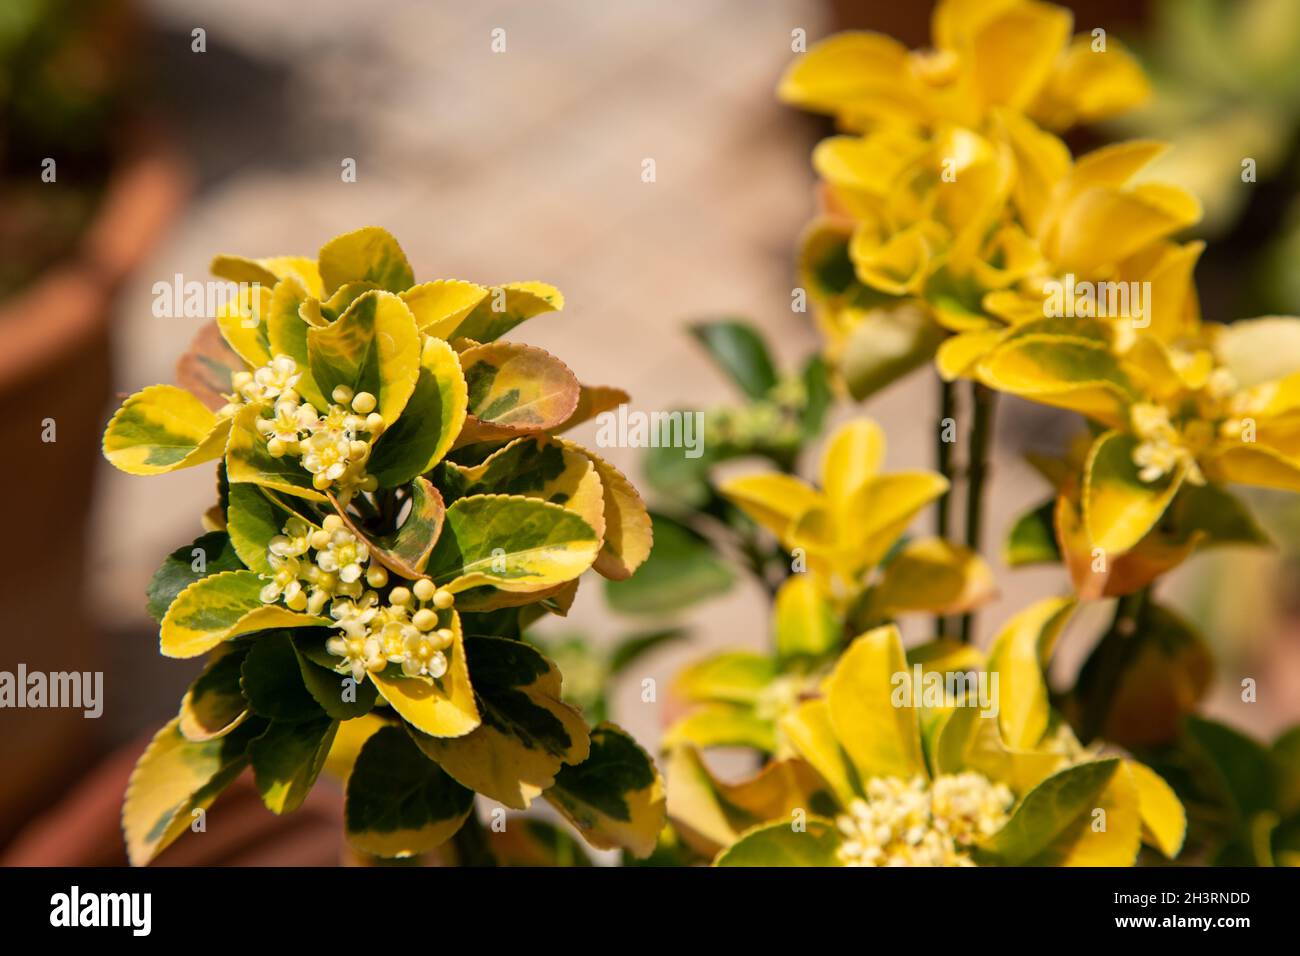 Euonymus Japonica Immagini e Fotos Stock - Alamy